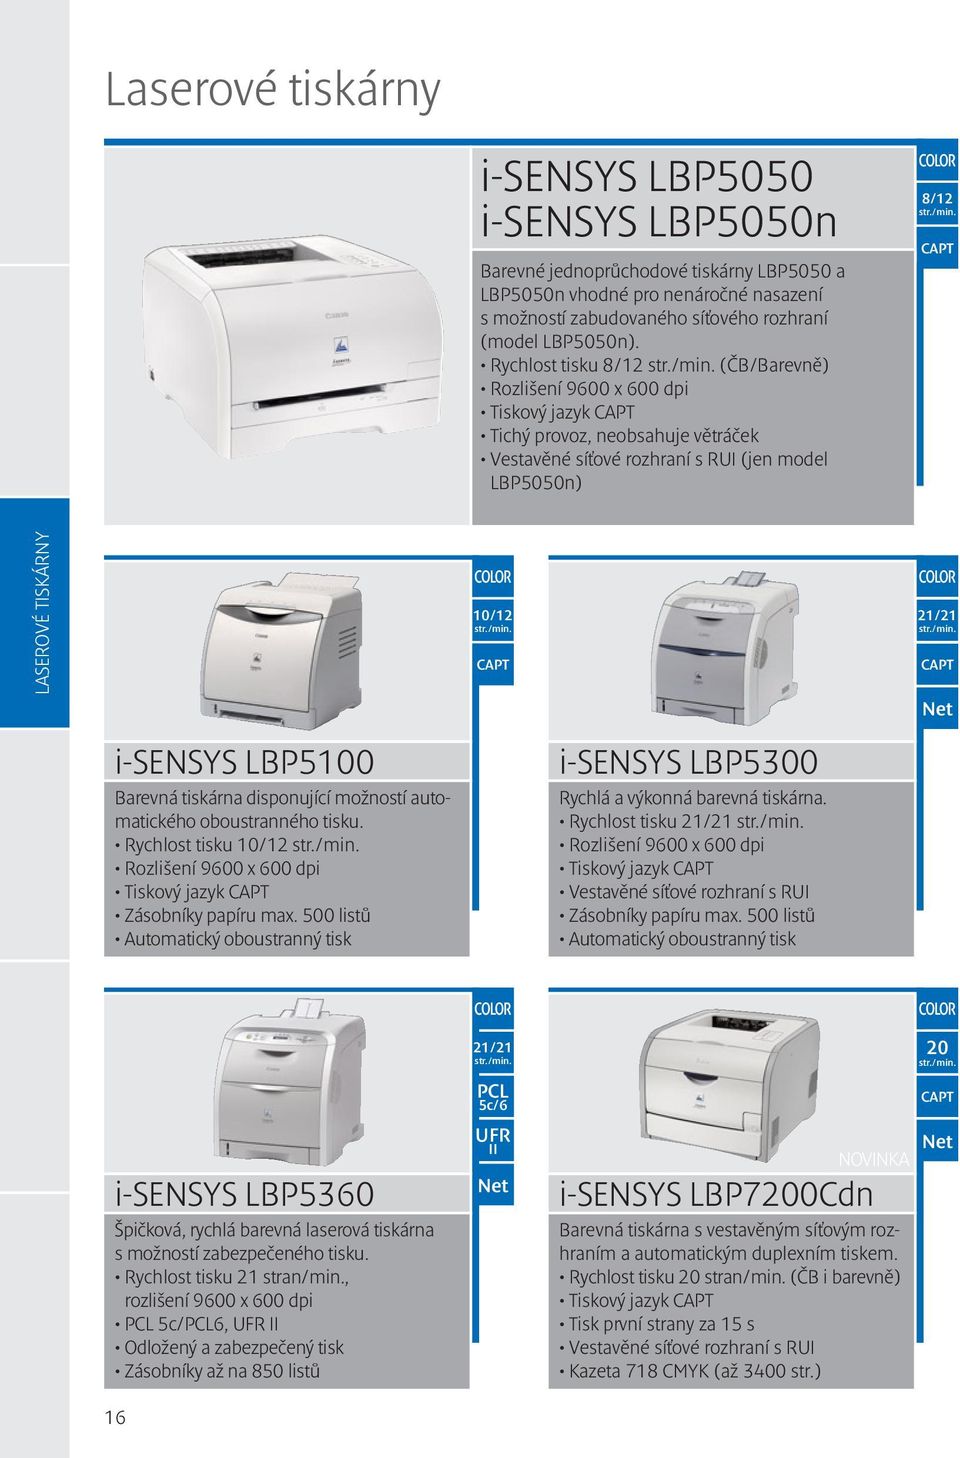 LBP5100 Barevná tiskárna disponující možností automatického oboustranného tisku. Rychlost tisku 10/12 Rozlišení 9600 x 600 dpi Tiskový jazyk CAPT Zásobníky papíru max.